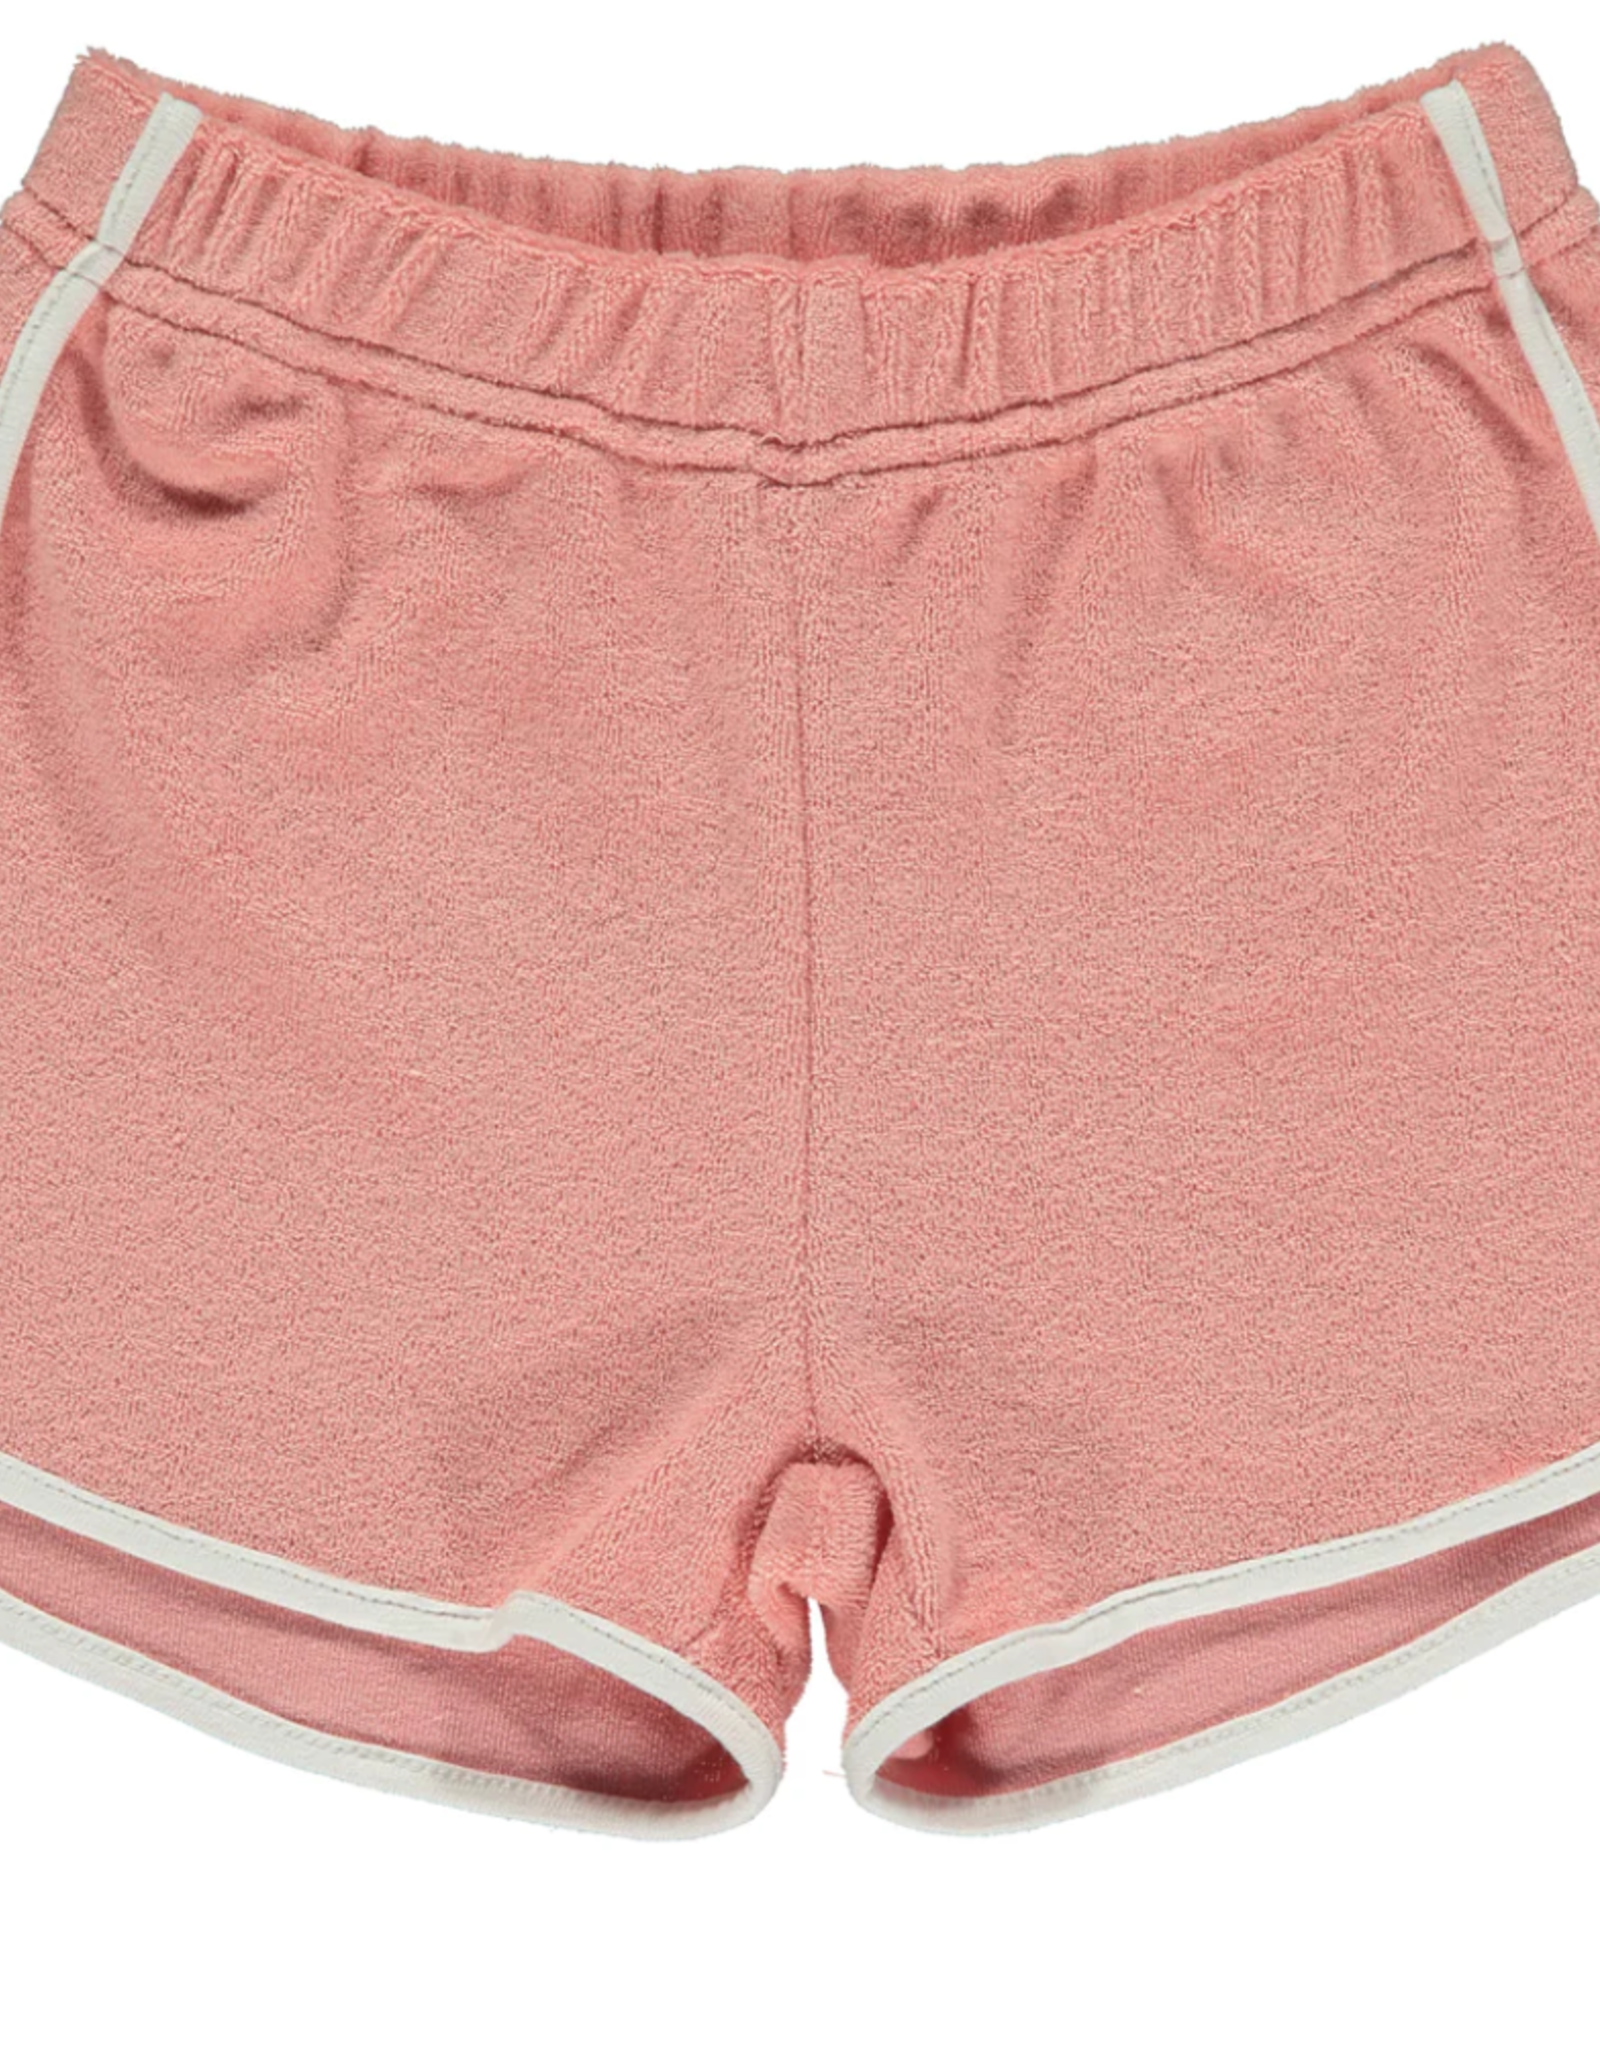 Vignette Indy Shorts, Pink